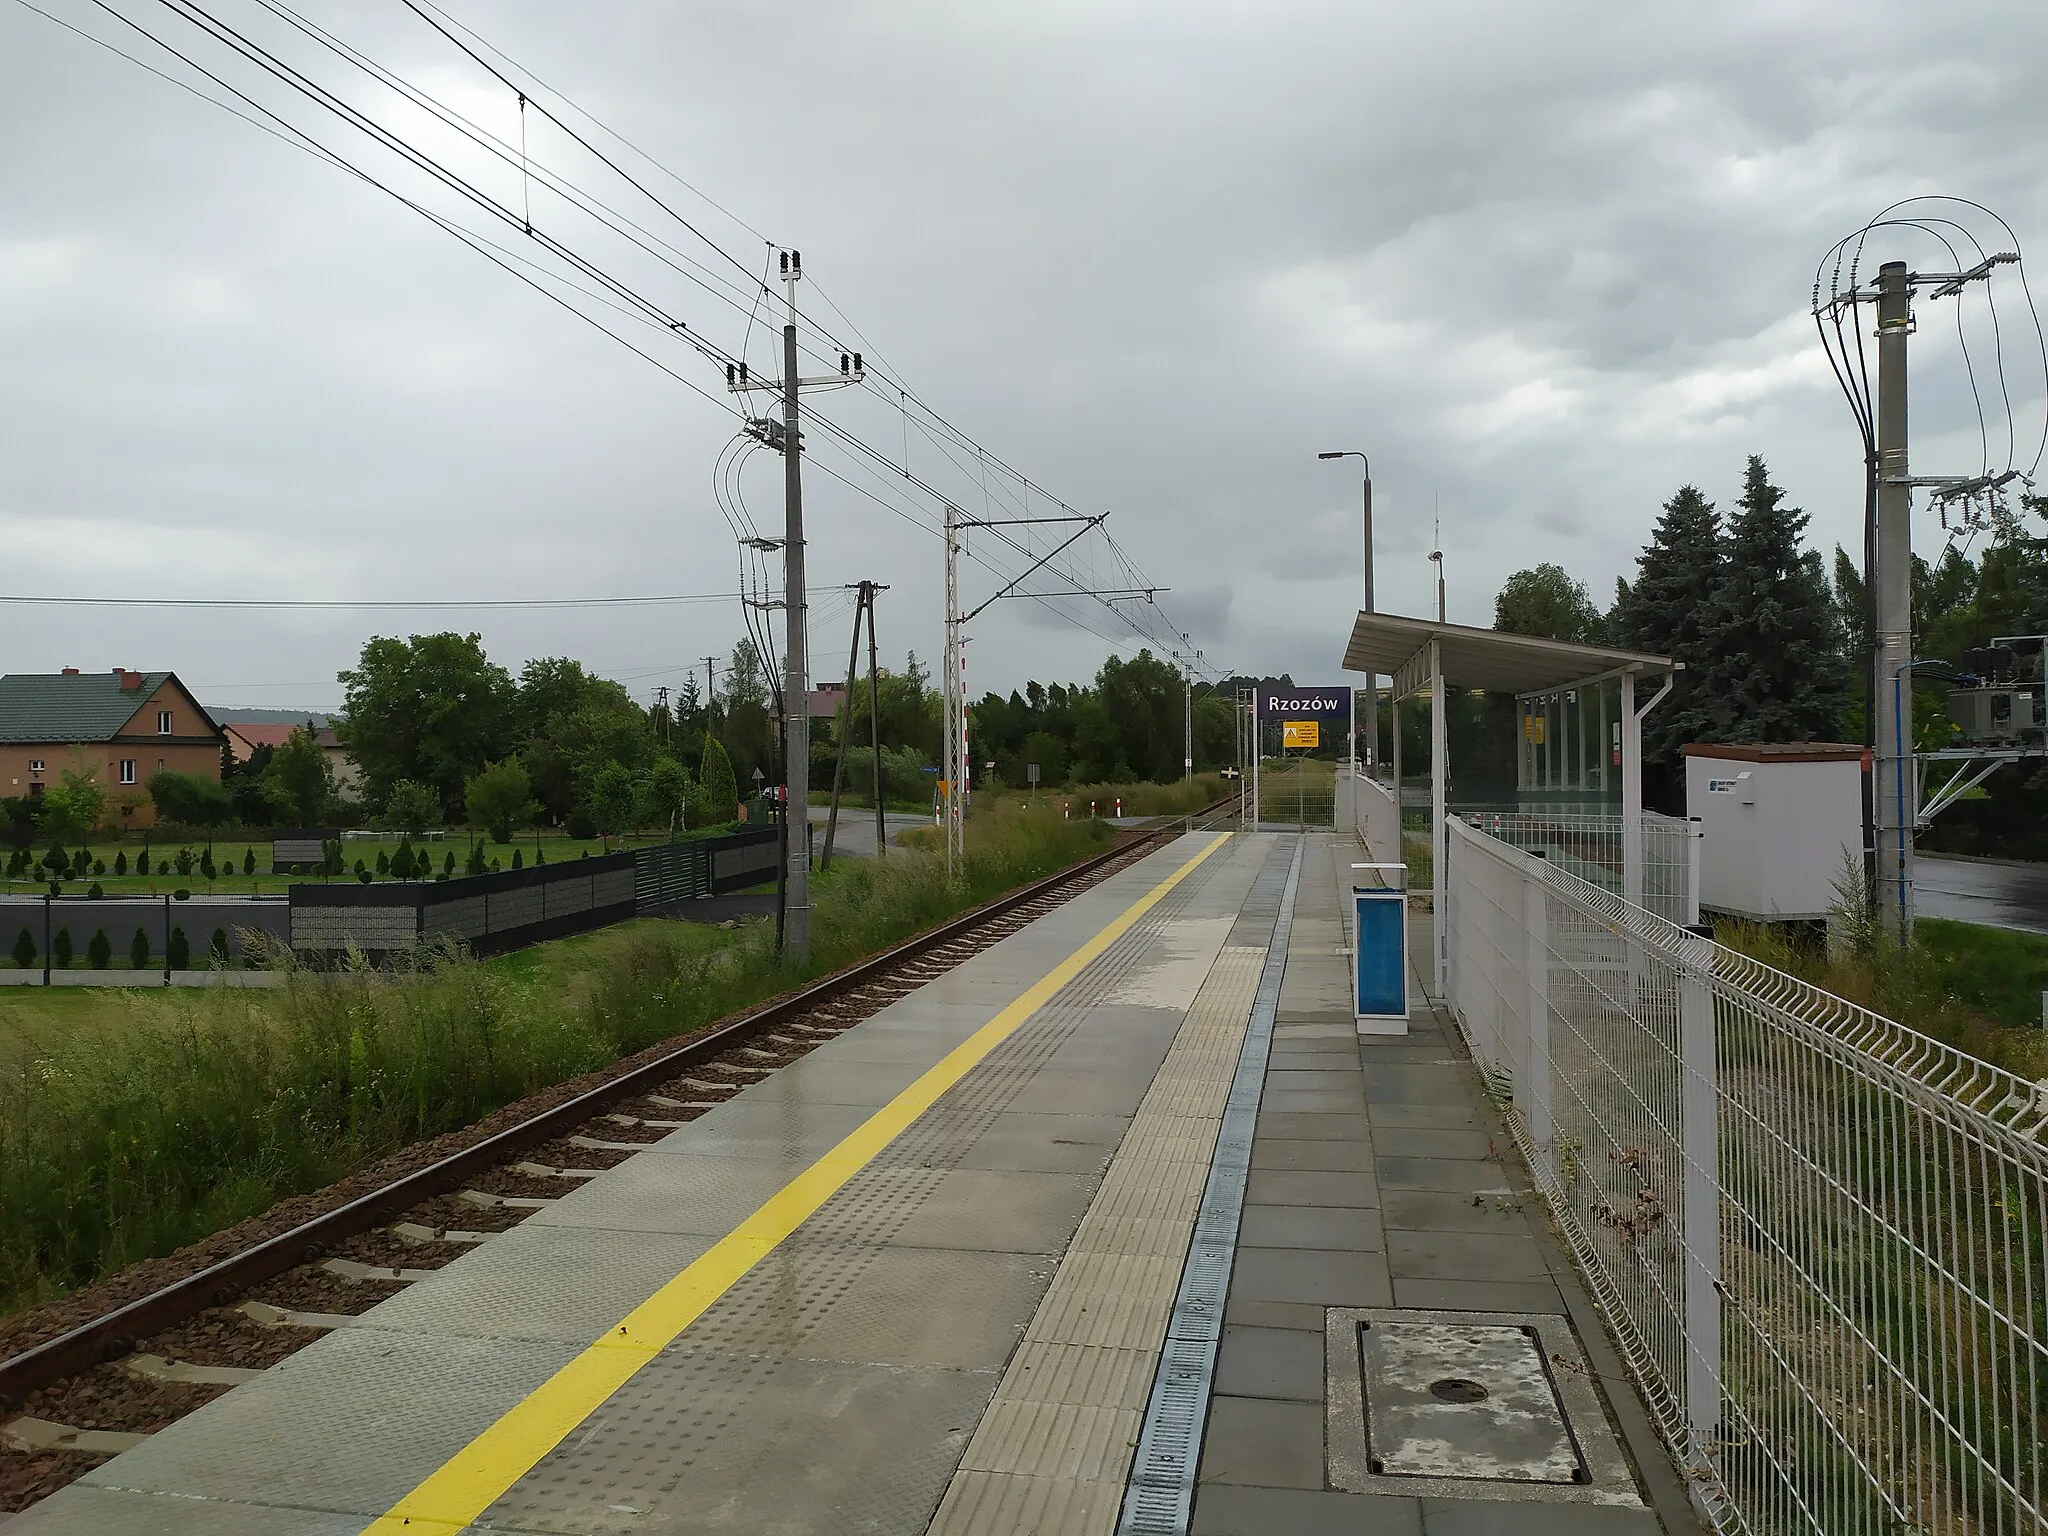 Photo showing: Peron przystanku kolejowego Rzozów w 2019 roku (widok w kierunku Kalwarii Zebrzydowskiej)